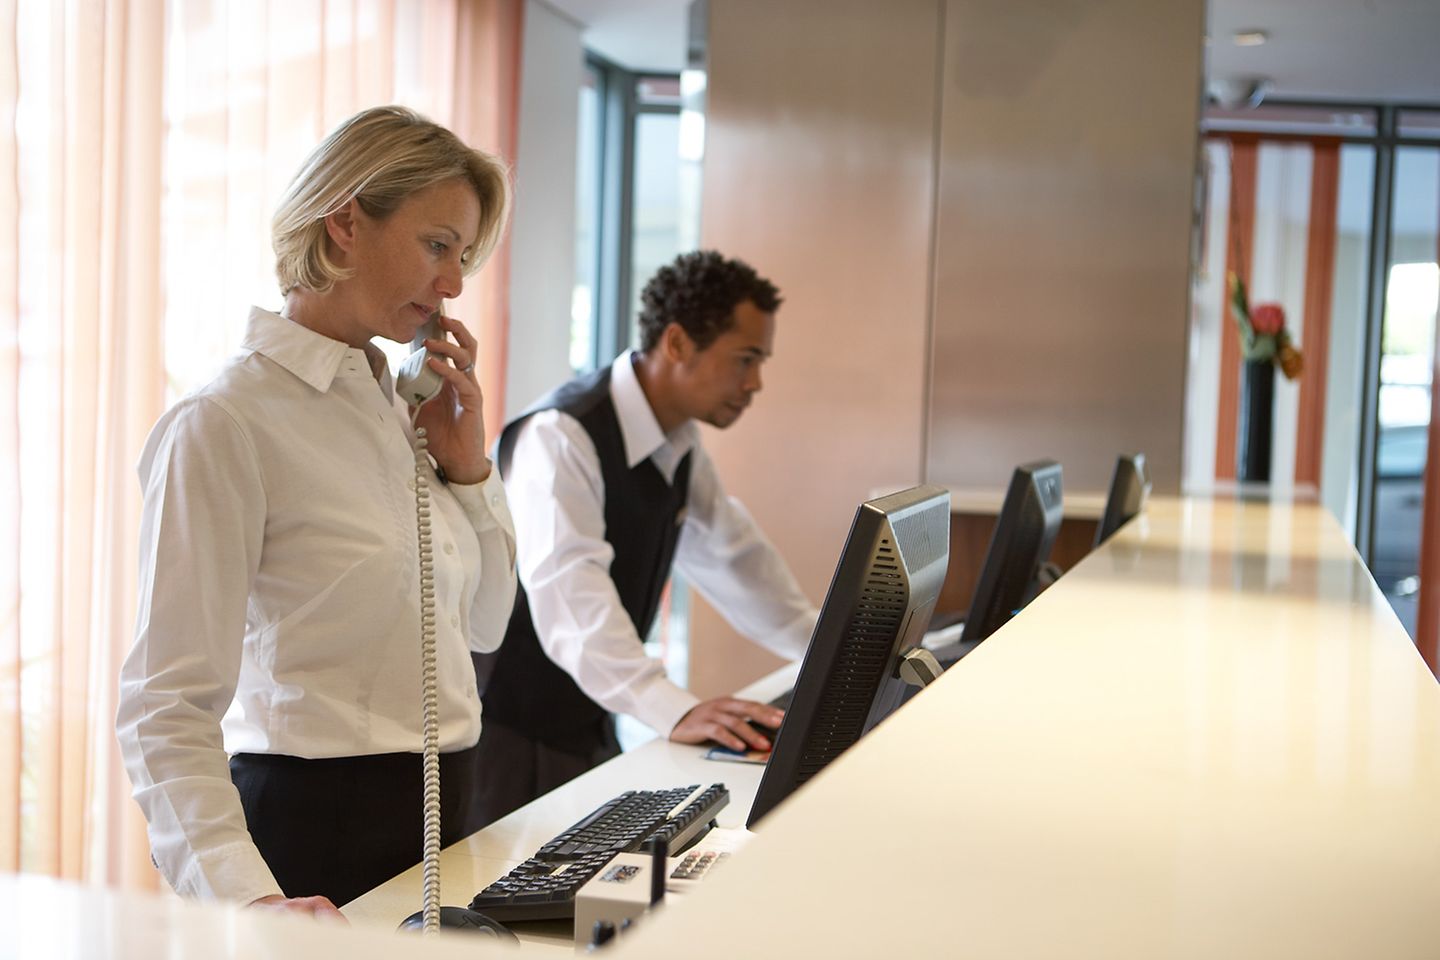 Une réceptionniste se tient derrière le comptoir d’accueil d’un hôtel tandis que son collègue vérifie des informations.